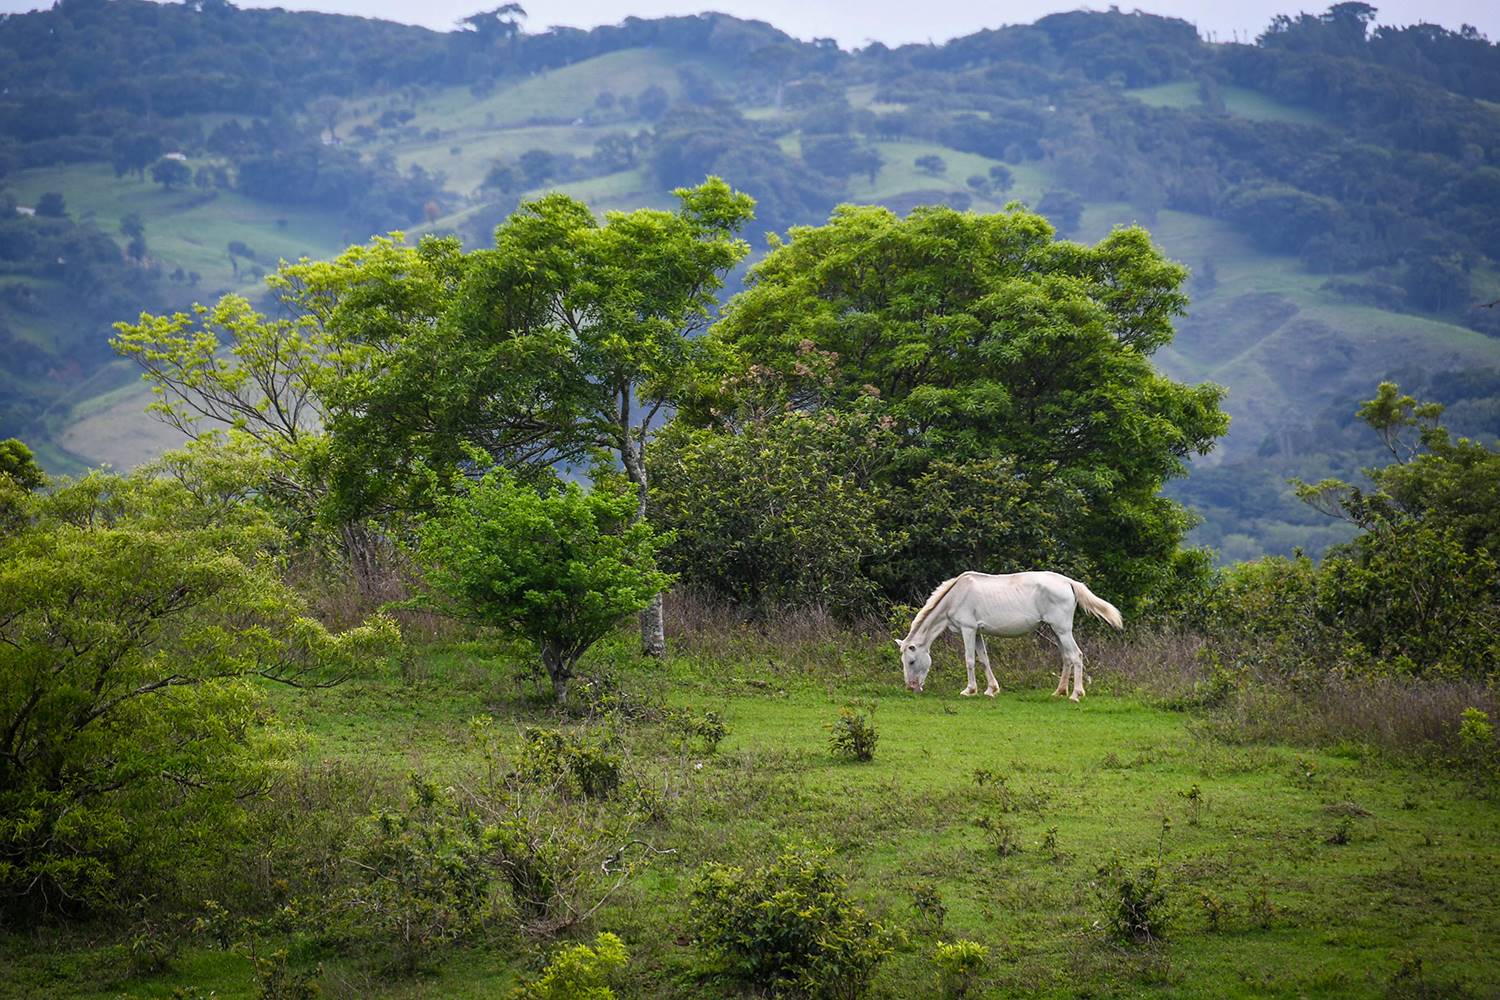 Renting a Car in Costa Rica White Horse in Field